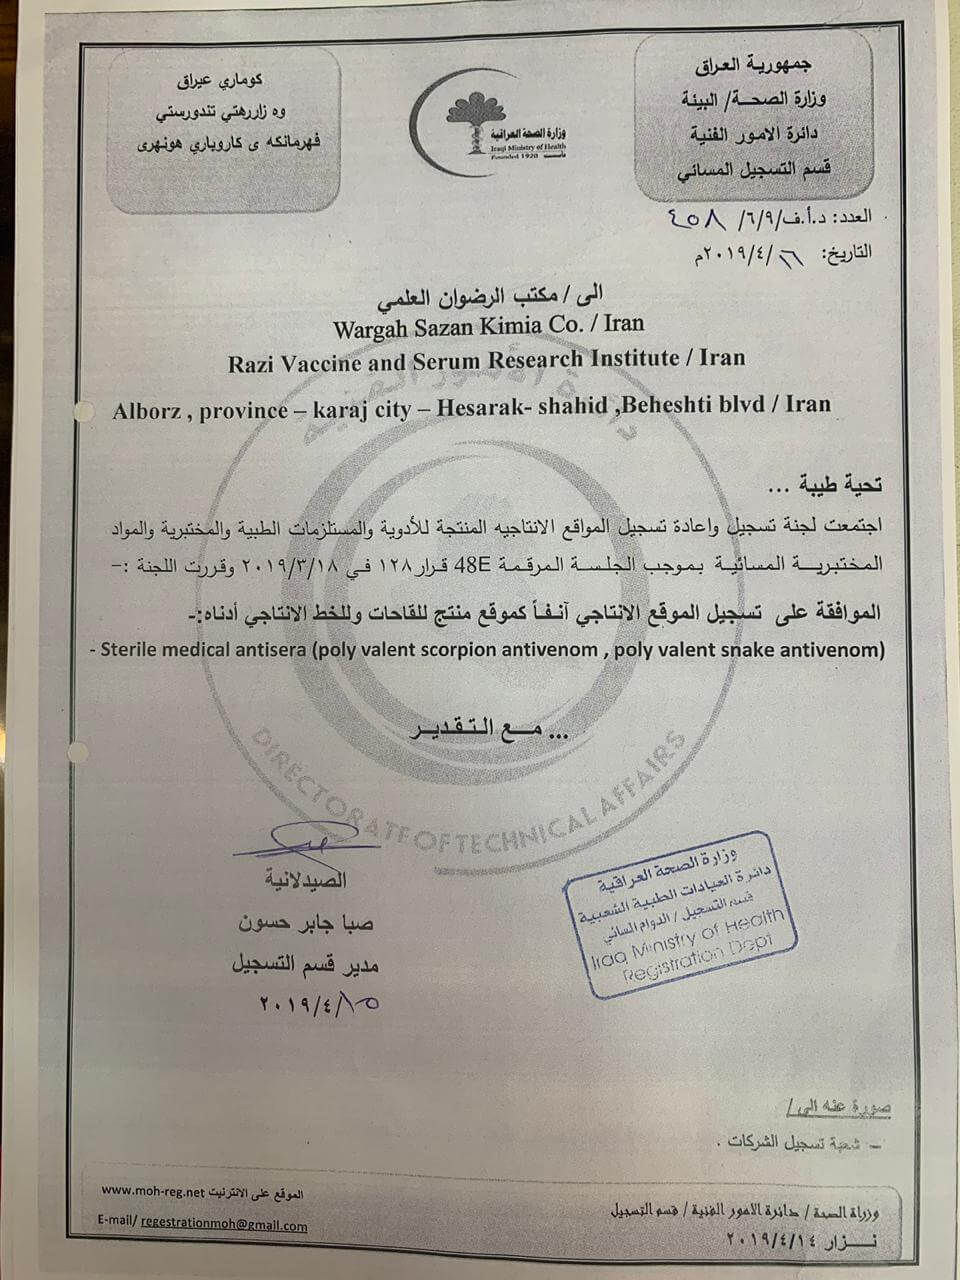 تسجيل معهد الرازي من قبل شرکة کیمیا وارجه سازان فی وزارة الصحة العراقية